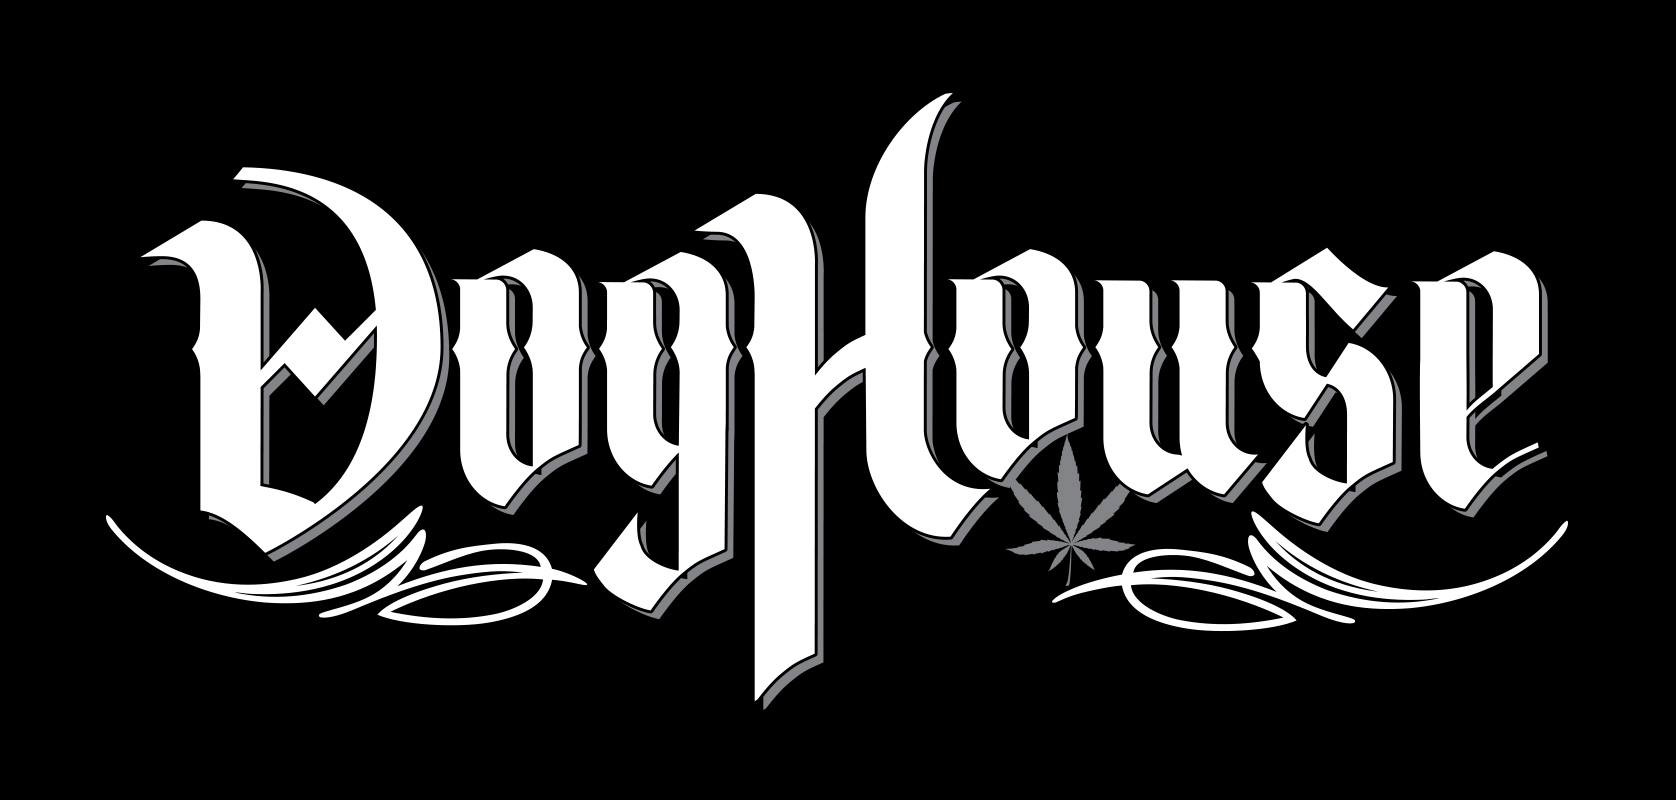 Doghouse Farms (OR) Cannabis Brand Logo